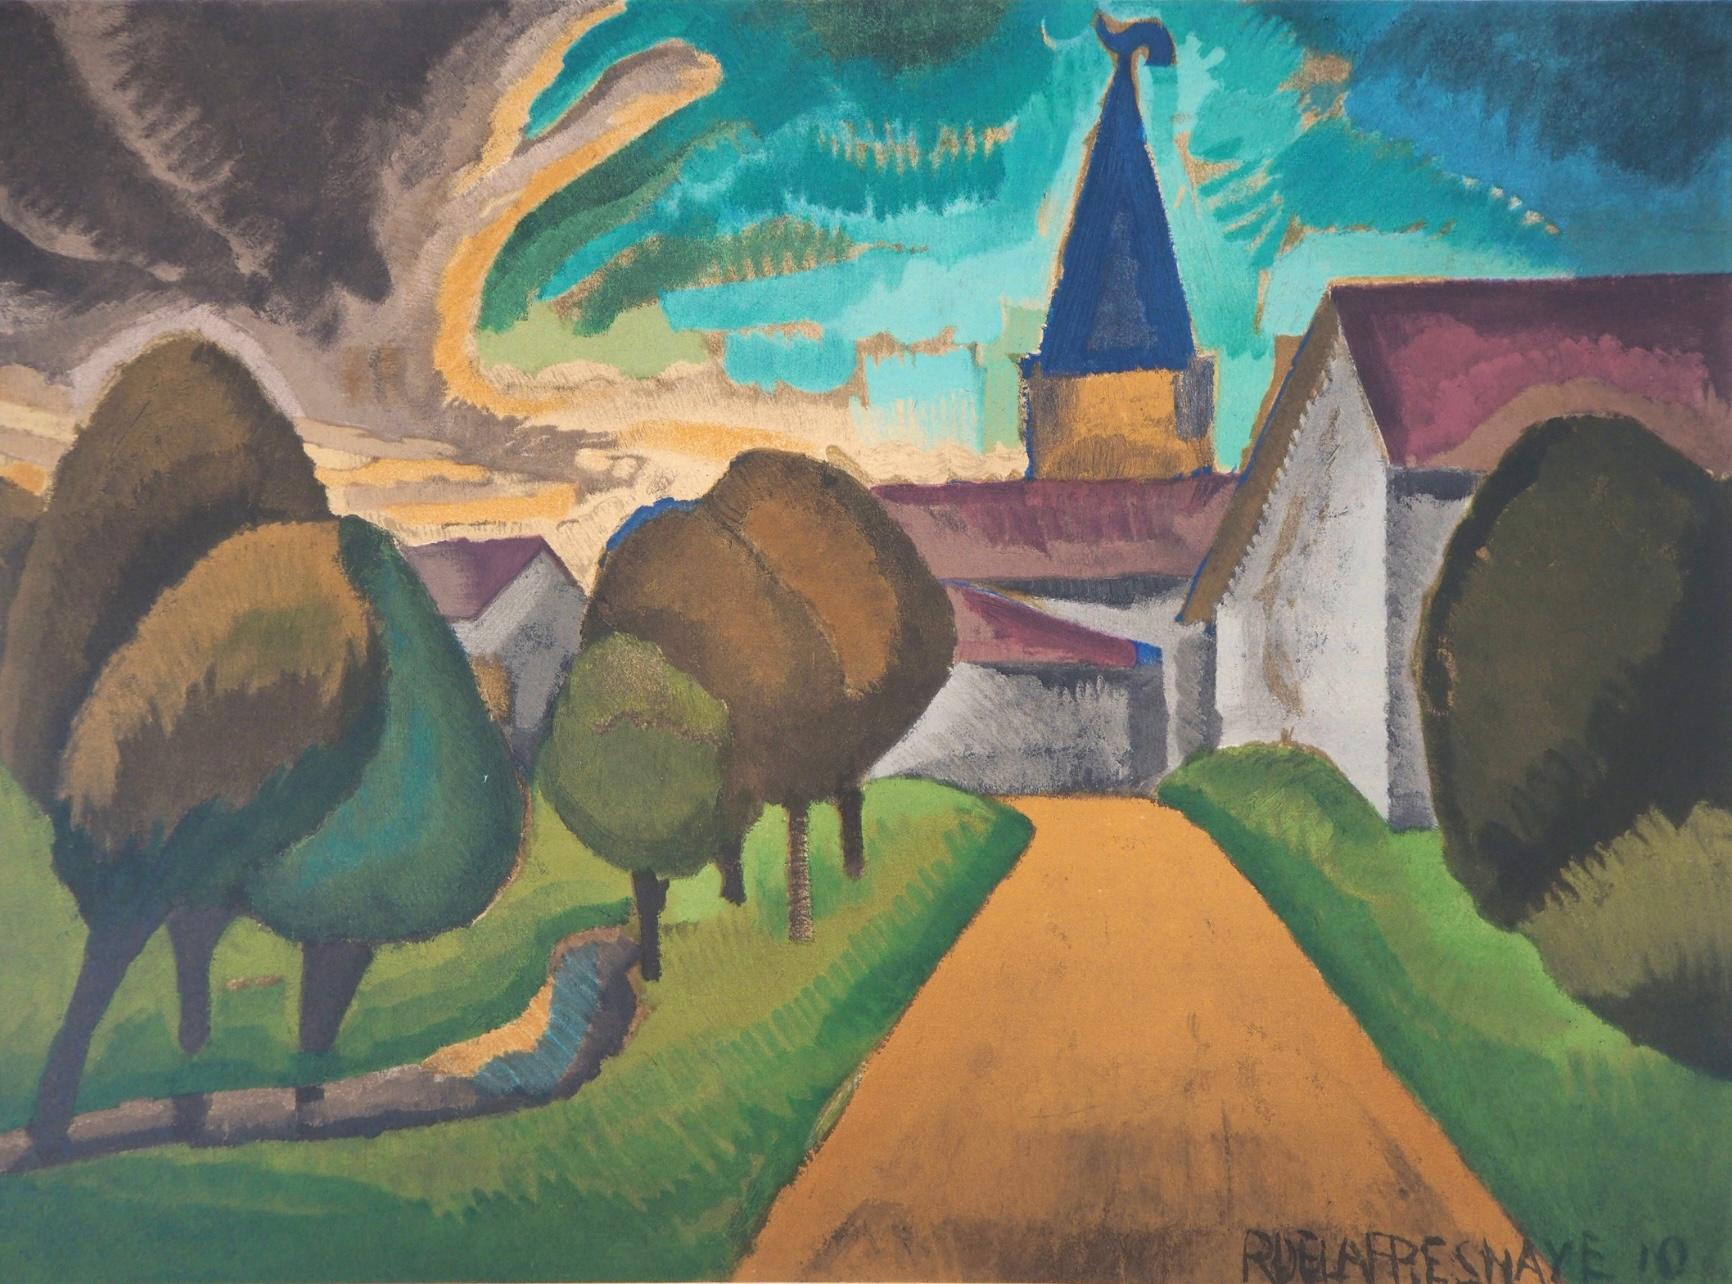 Roger de la Fresnaye Landscape Print - de La Fresnaye, L'entrée du village, Roger de La Fresnaye (after)